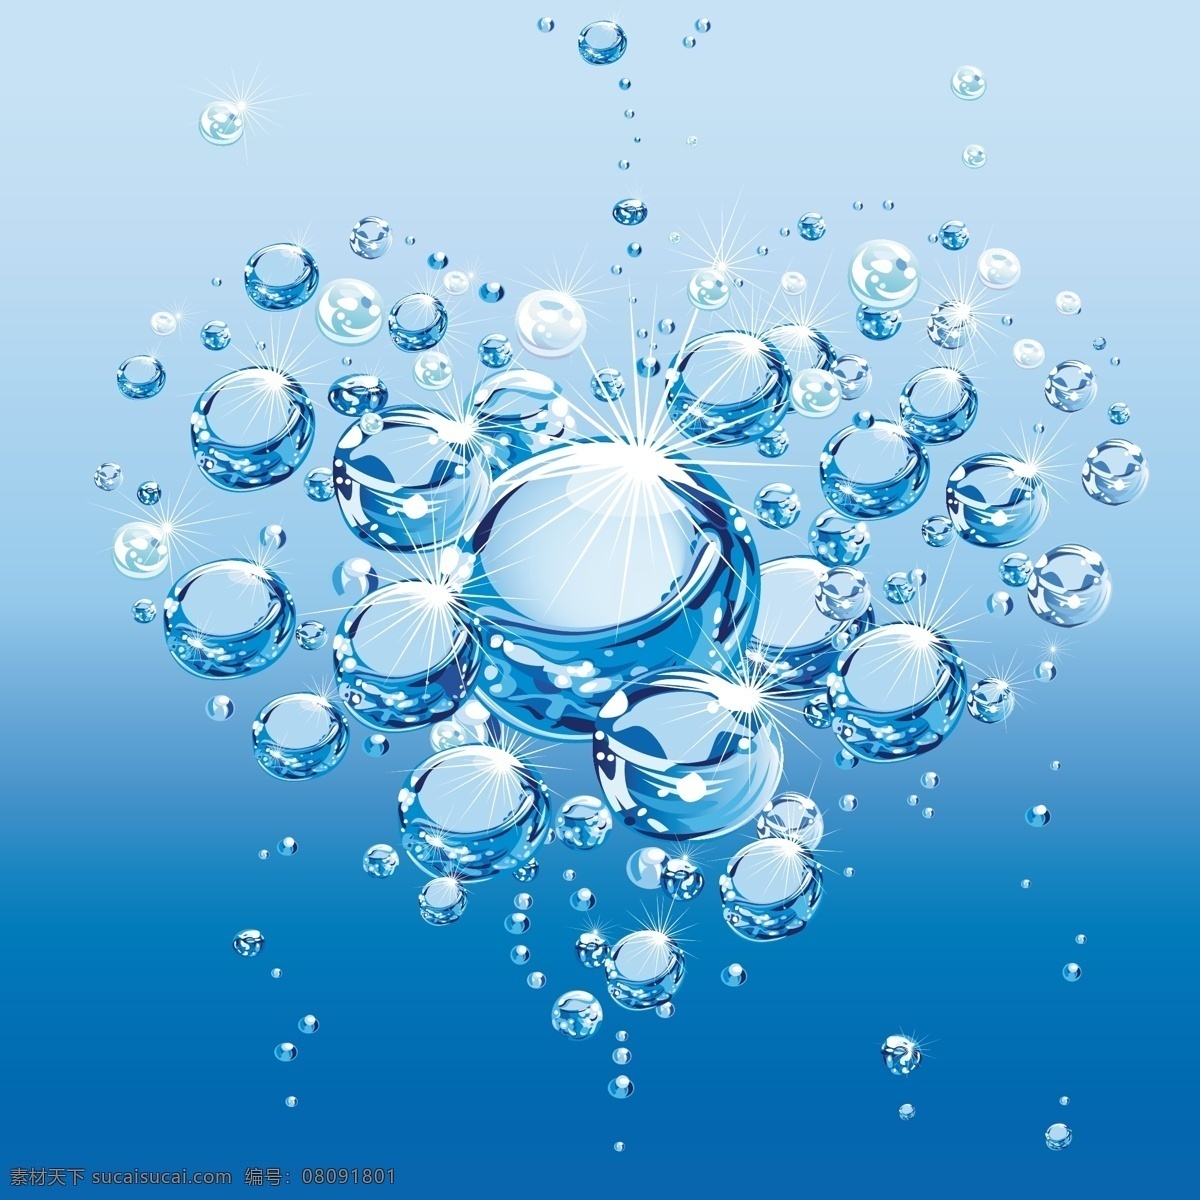 矢量 水珠 心形 背景 蓝色 矢量素材 水滴 水纹 矢量图 其他矢量图